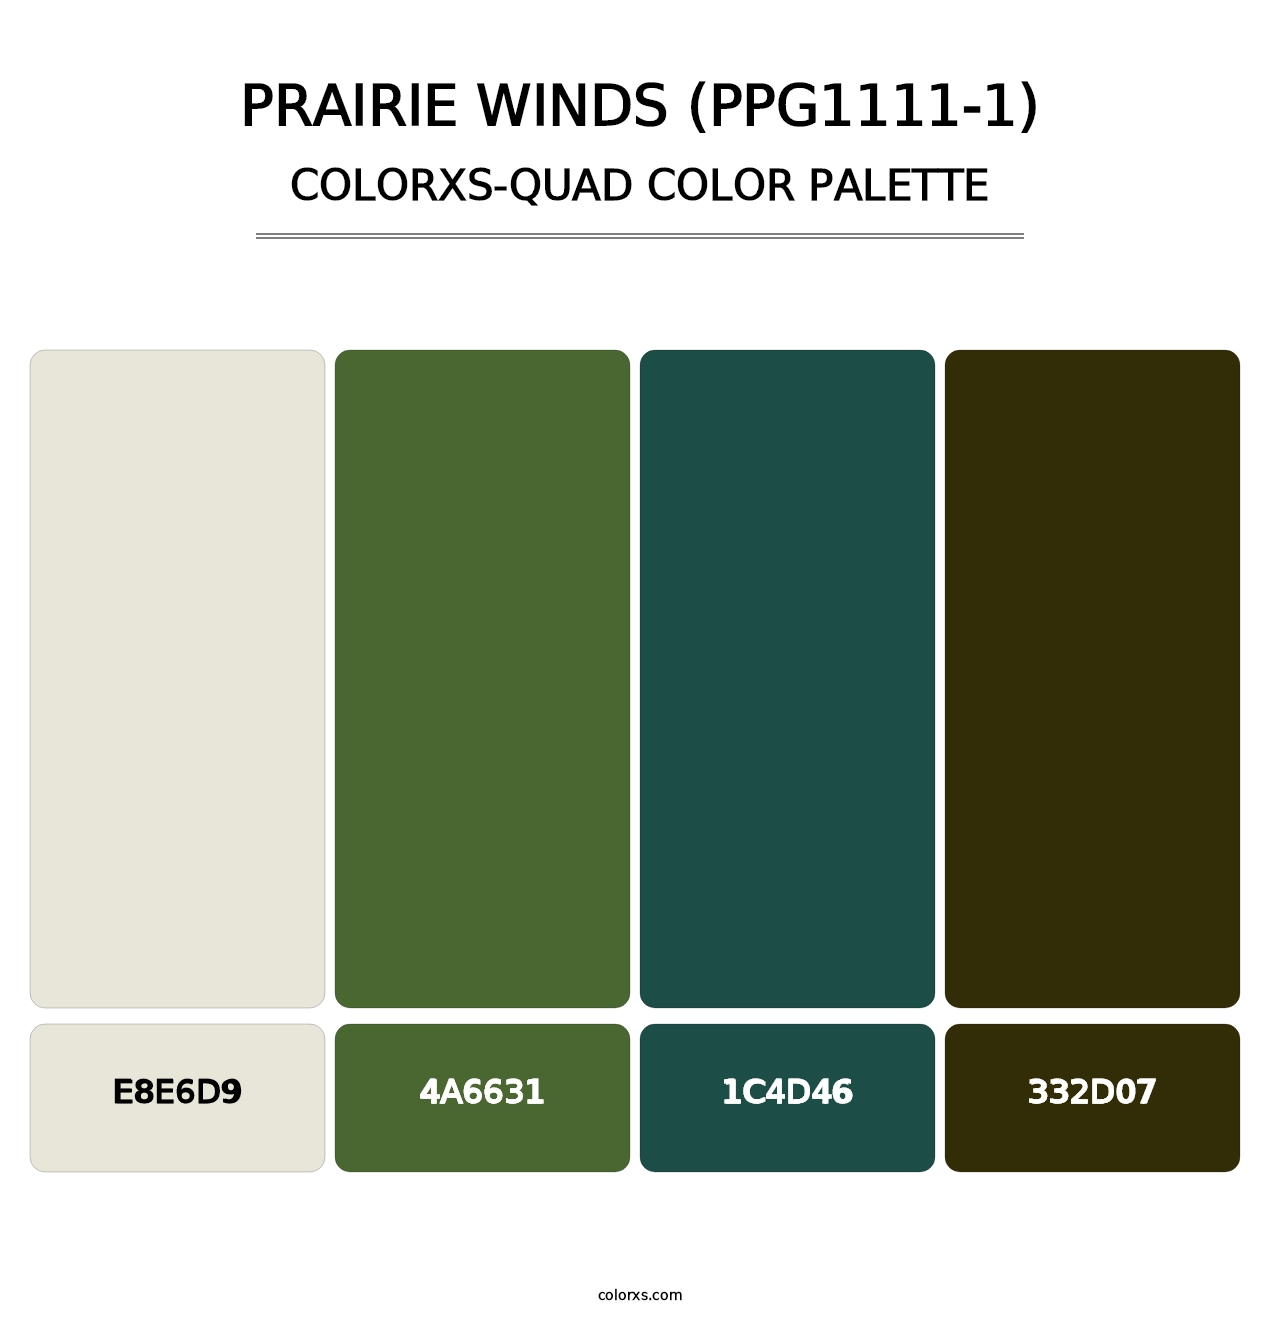 Prairie Winds (PPG1111-1) - Colorxs Quad Palette